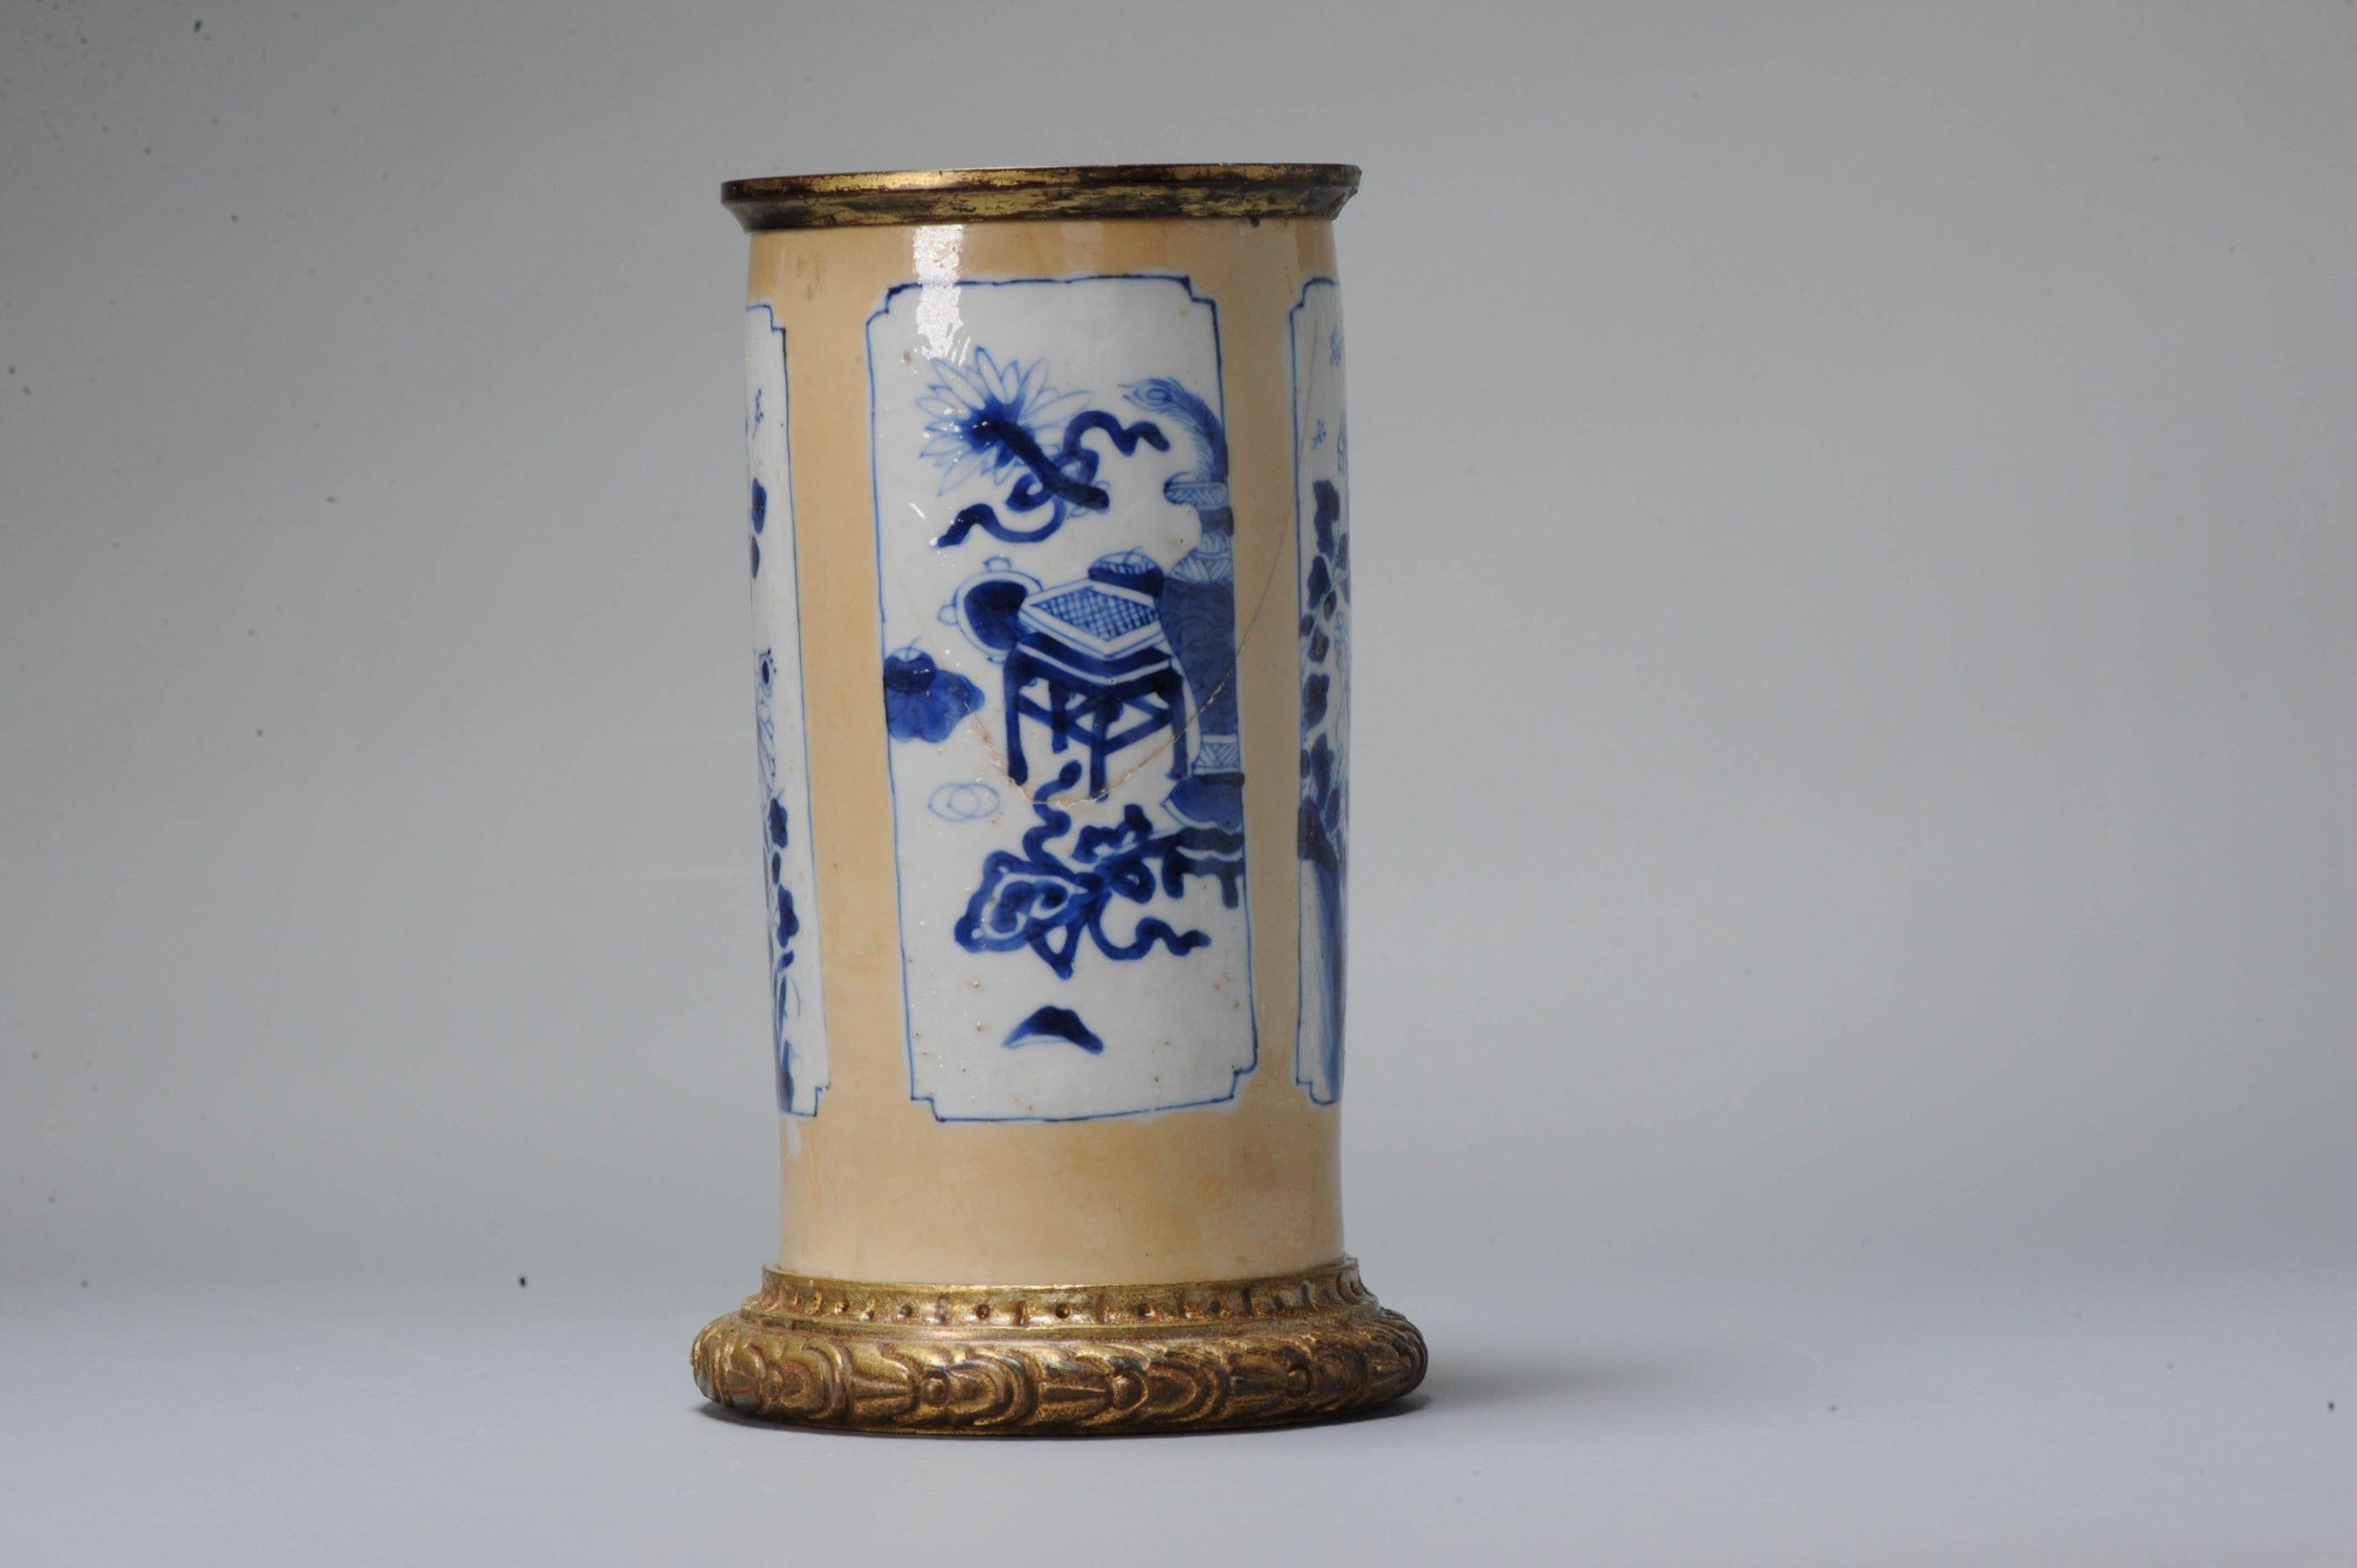 China, blau-weiße Vase auf Cafe au lait-Grund mit Ormulu-Montage. Sehr ungewöhnliches Stück. Schönes Exemplar aus der Kangxi-Periode.

Bei dem ursprünglichen Stück handelte es sich wahrscheinlich um eine Hülsenvase, die abgeschnitten